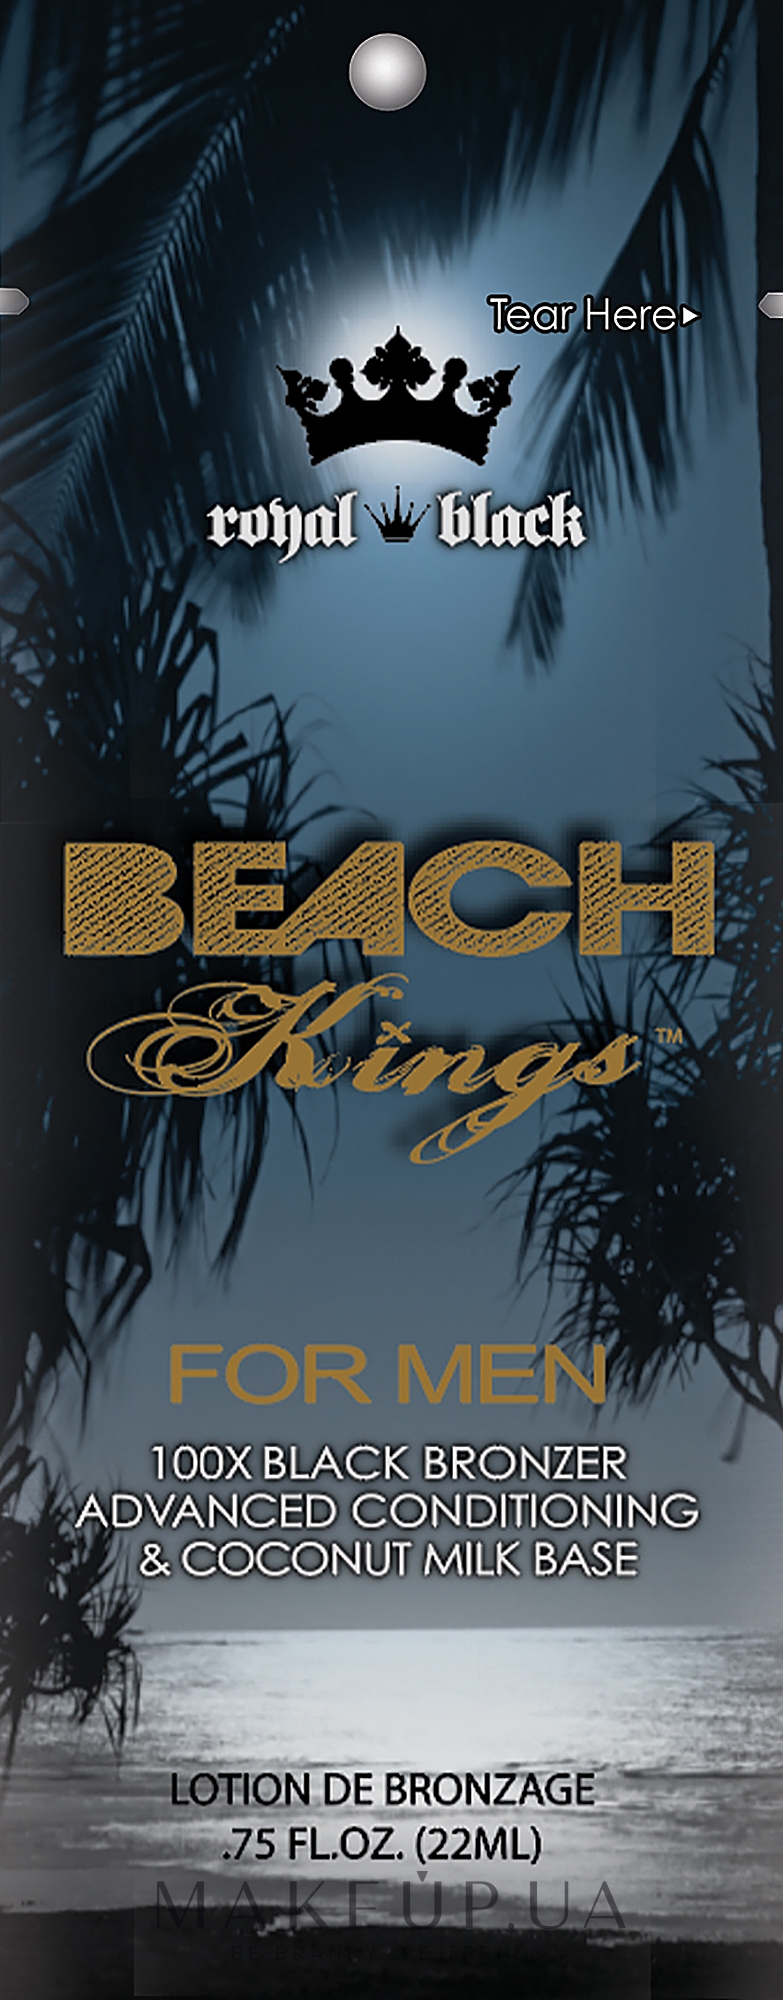 Крем для загара в солярии для мужчин - Tan Asz U Beach Kings For Men (пробник) — фото 22ml